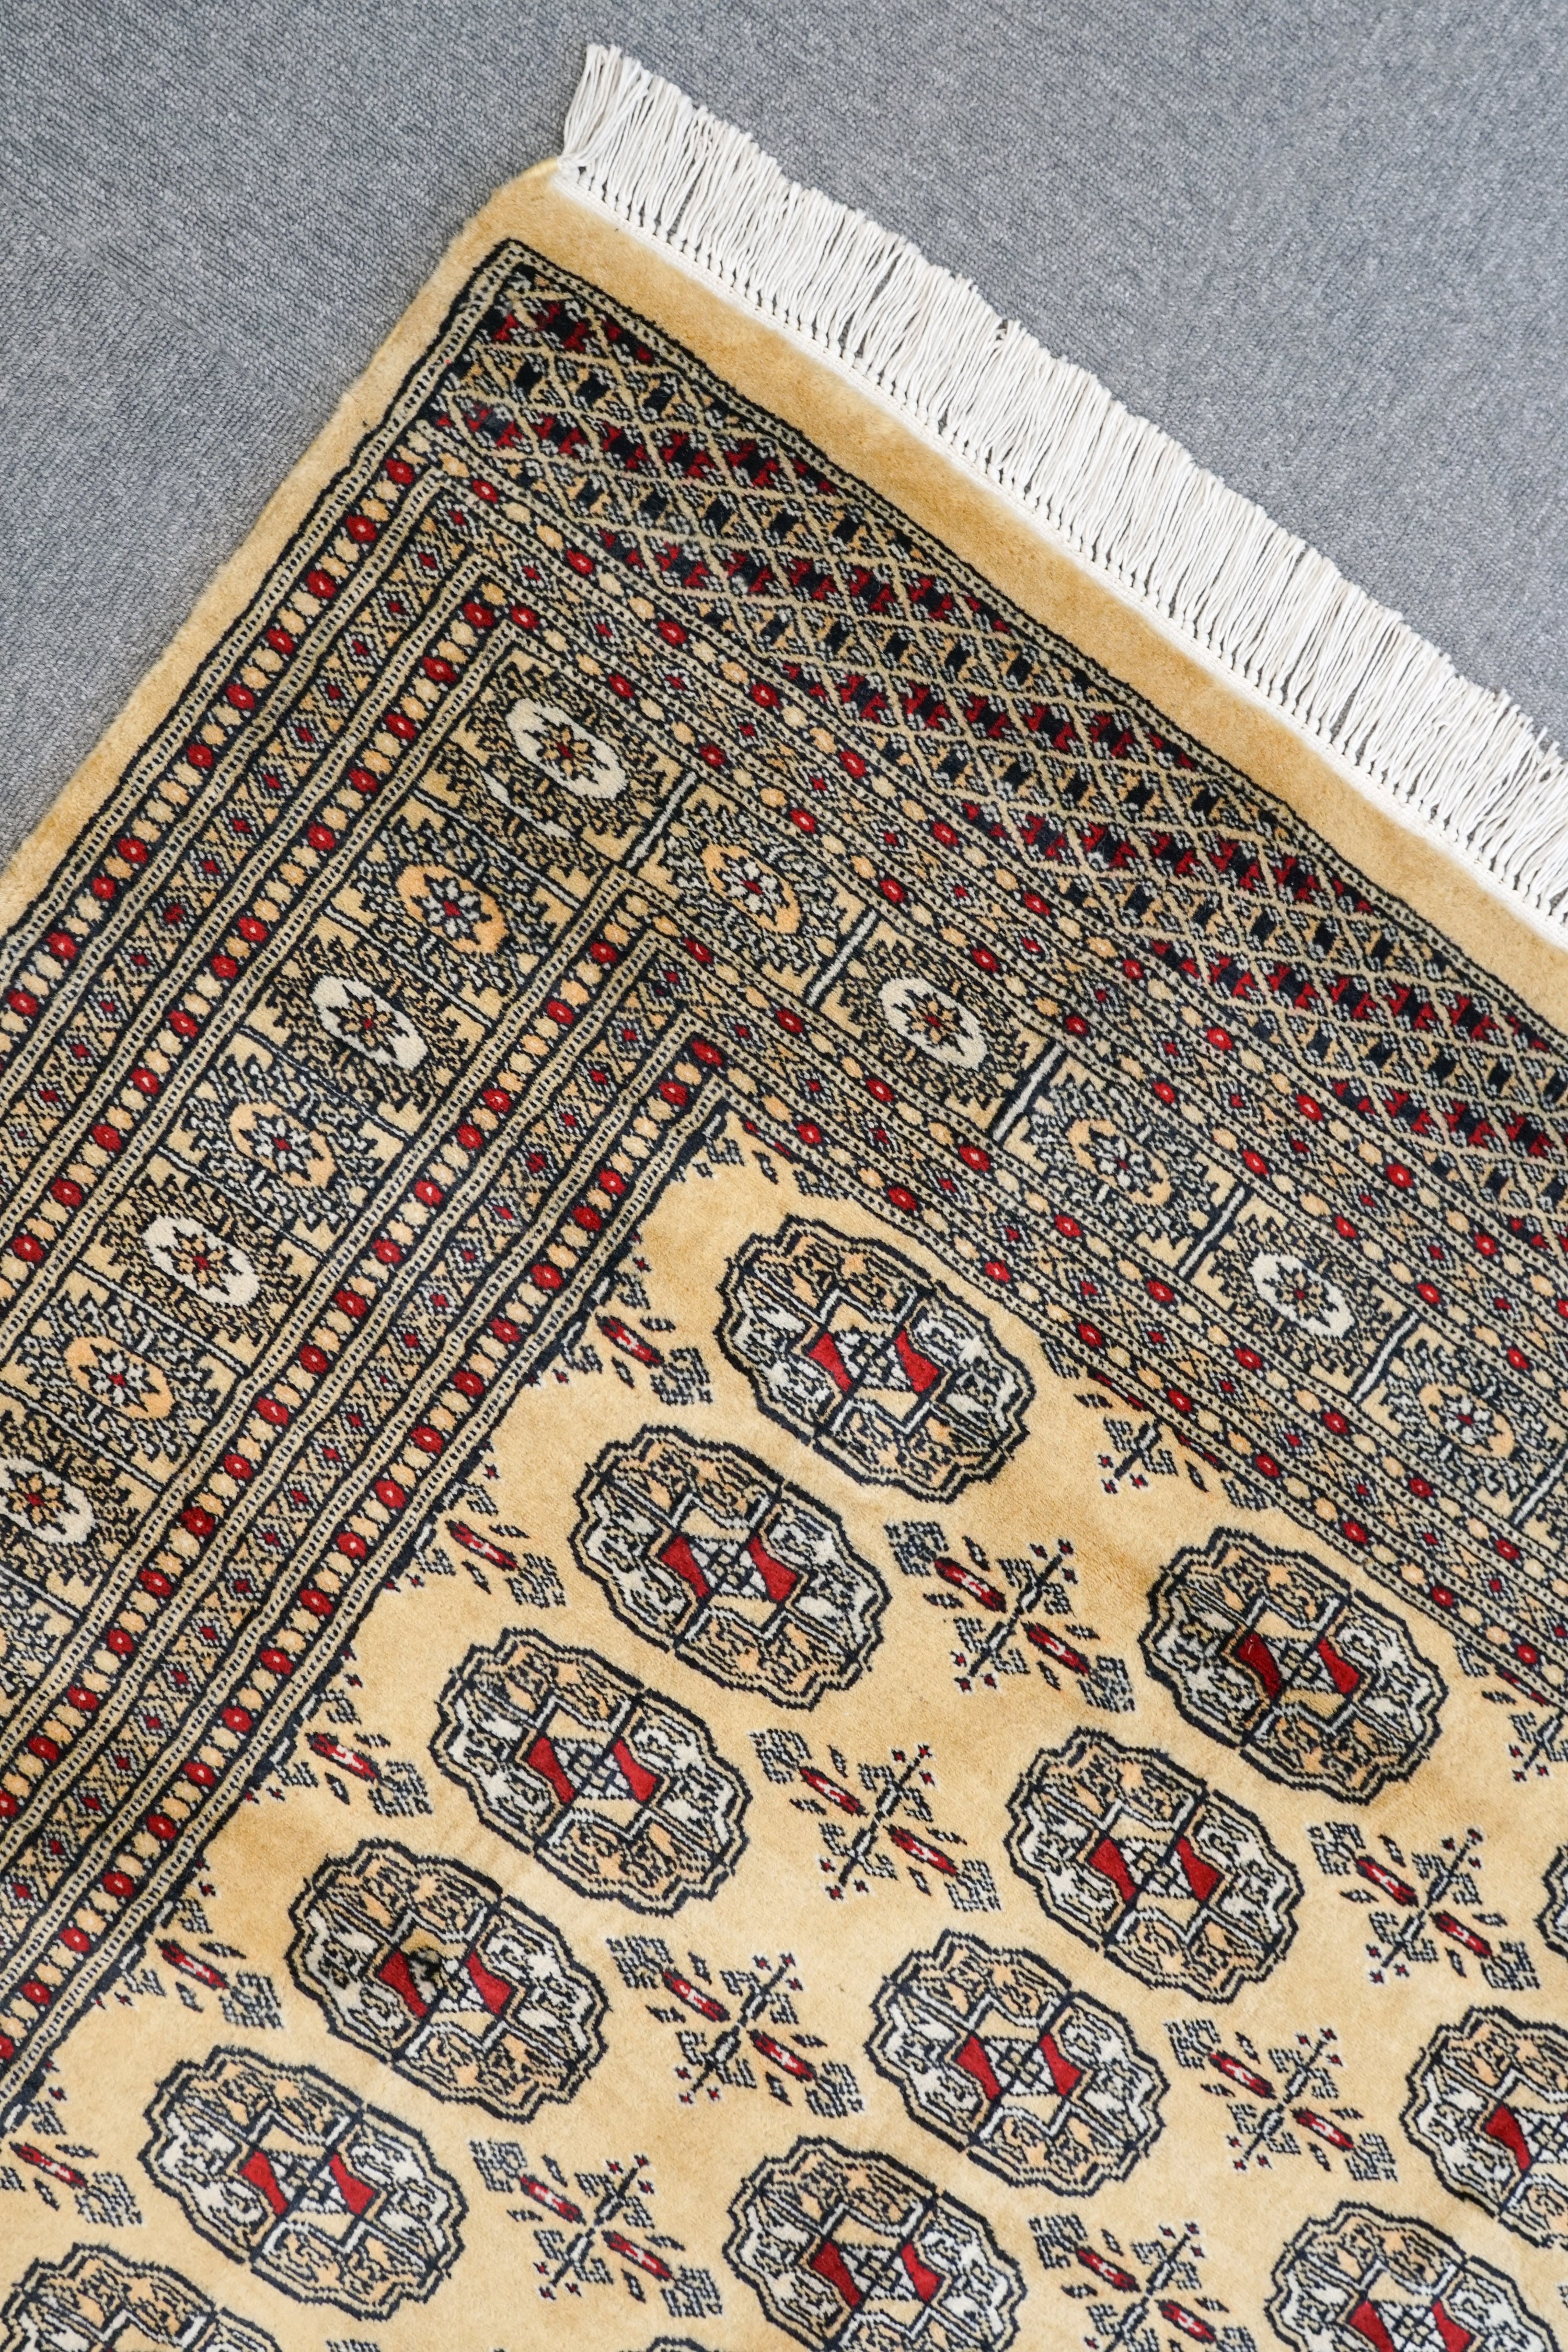 ボハラデザインのパキスタン手織り絨毯 size:297×214cm リビングラグ